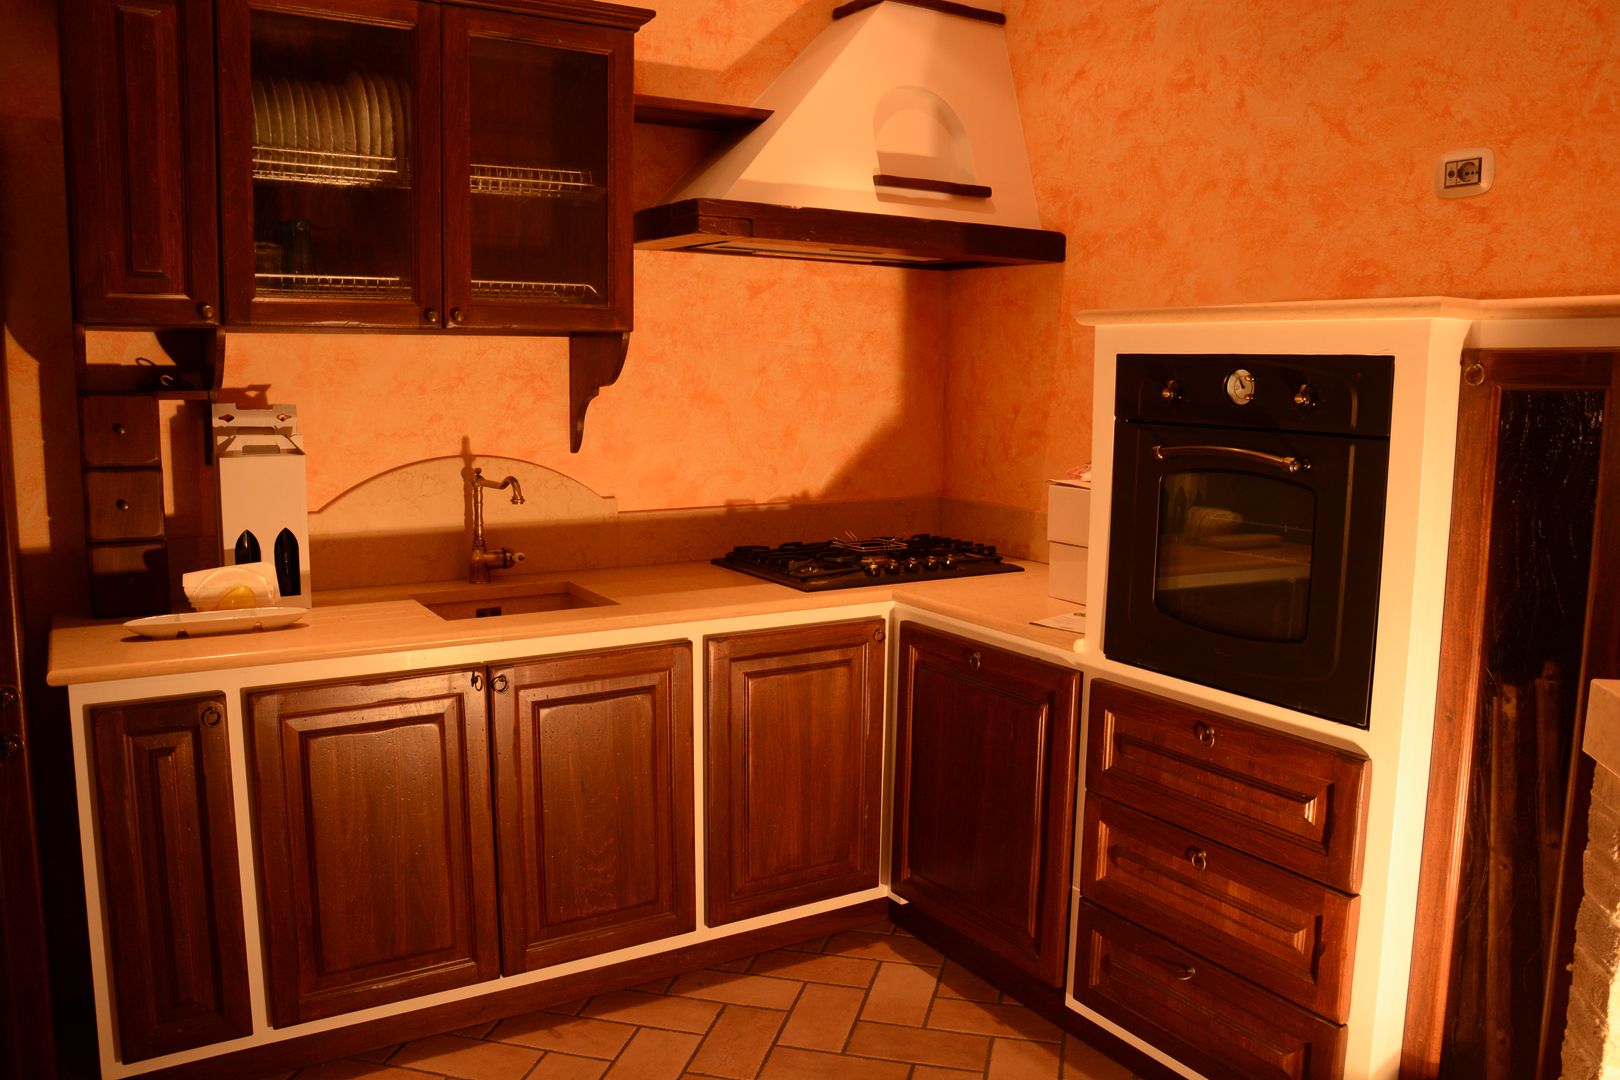 cucina rustica murata , il falegname di Diego Storani il falegname di Diego Storani Built-in kitchens